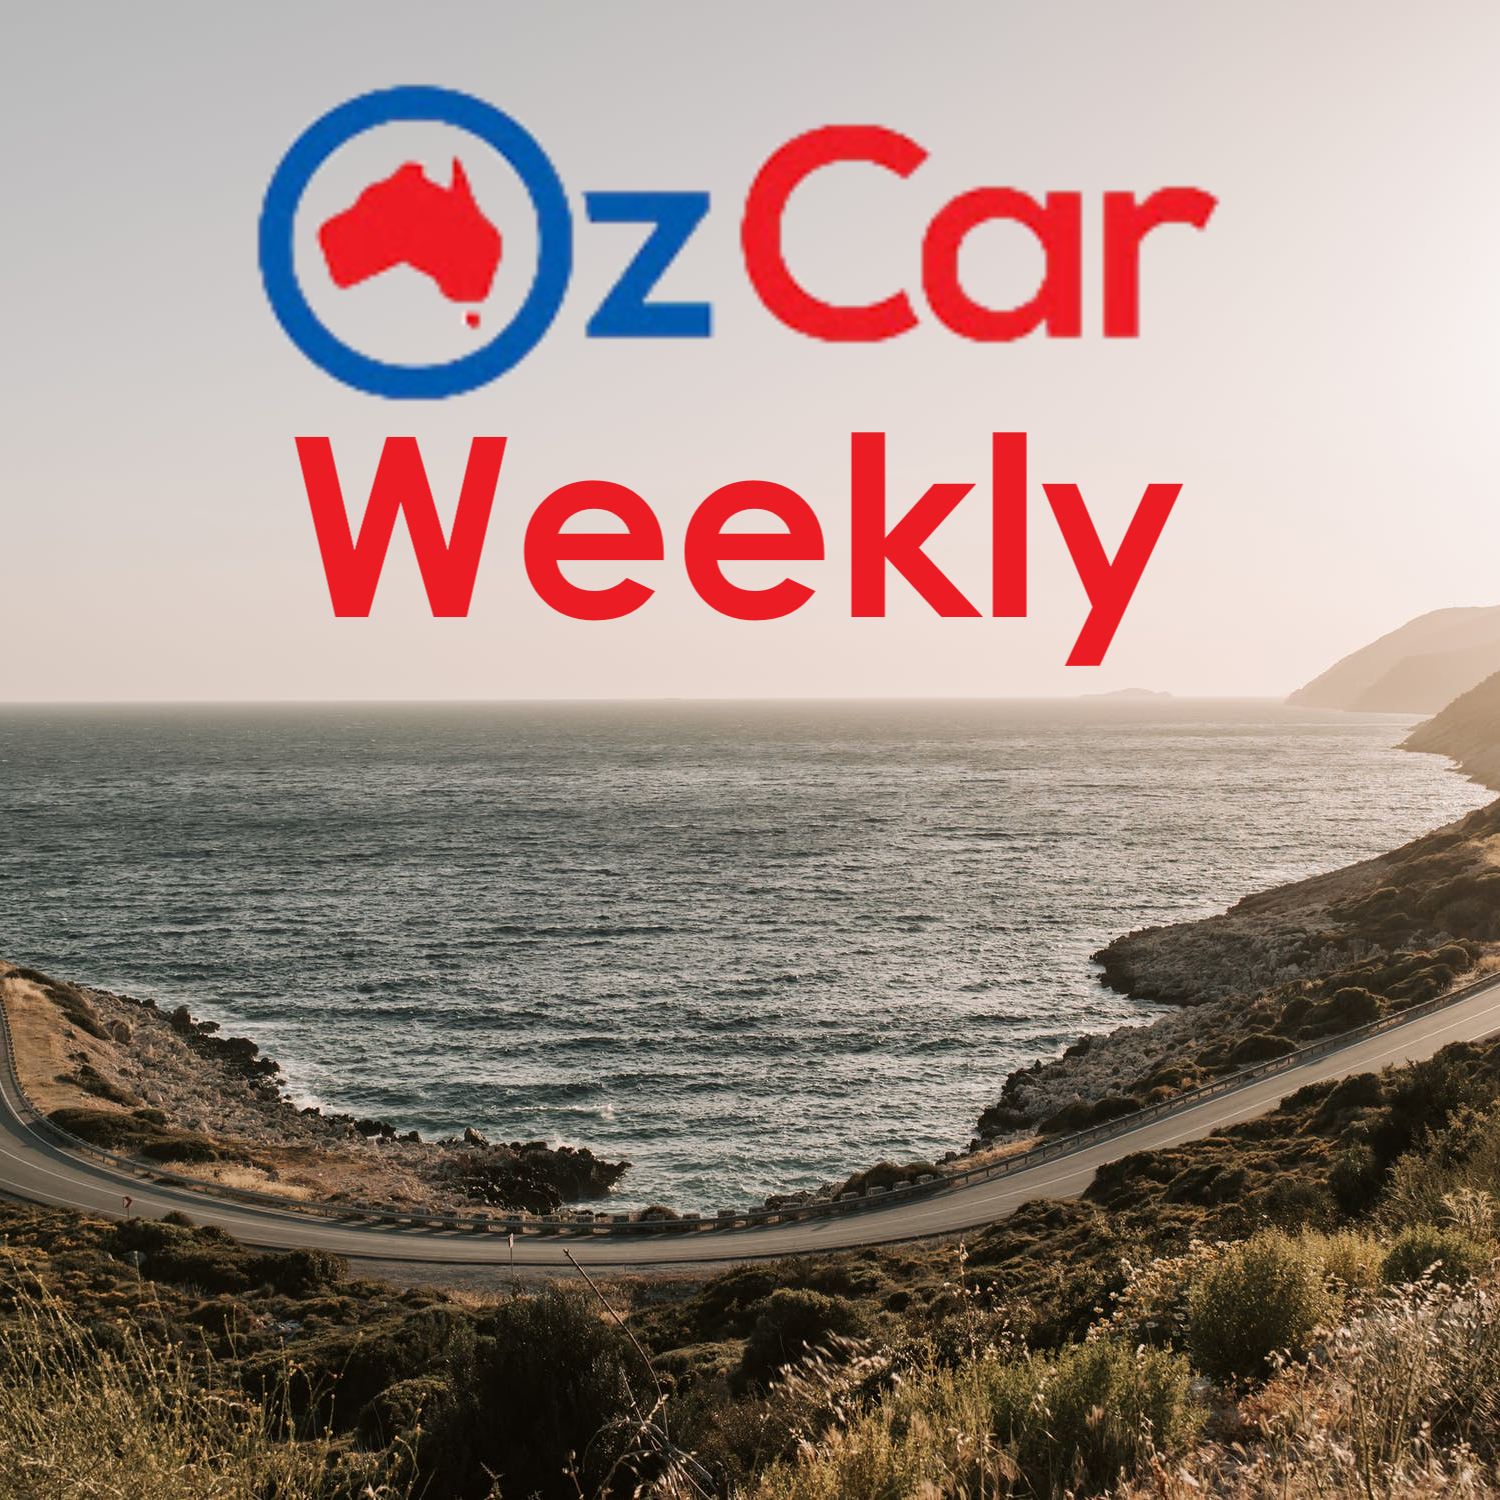 OzCar Weekly Episode 33